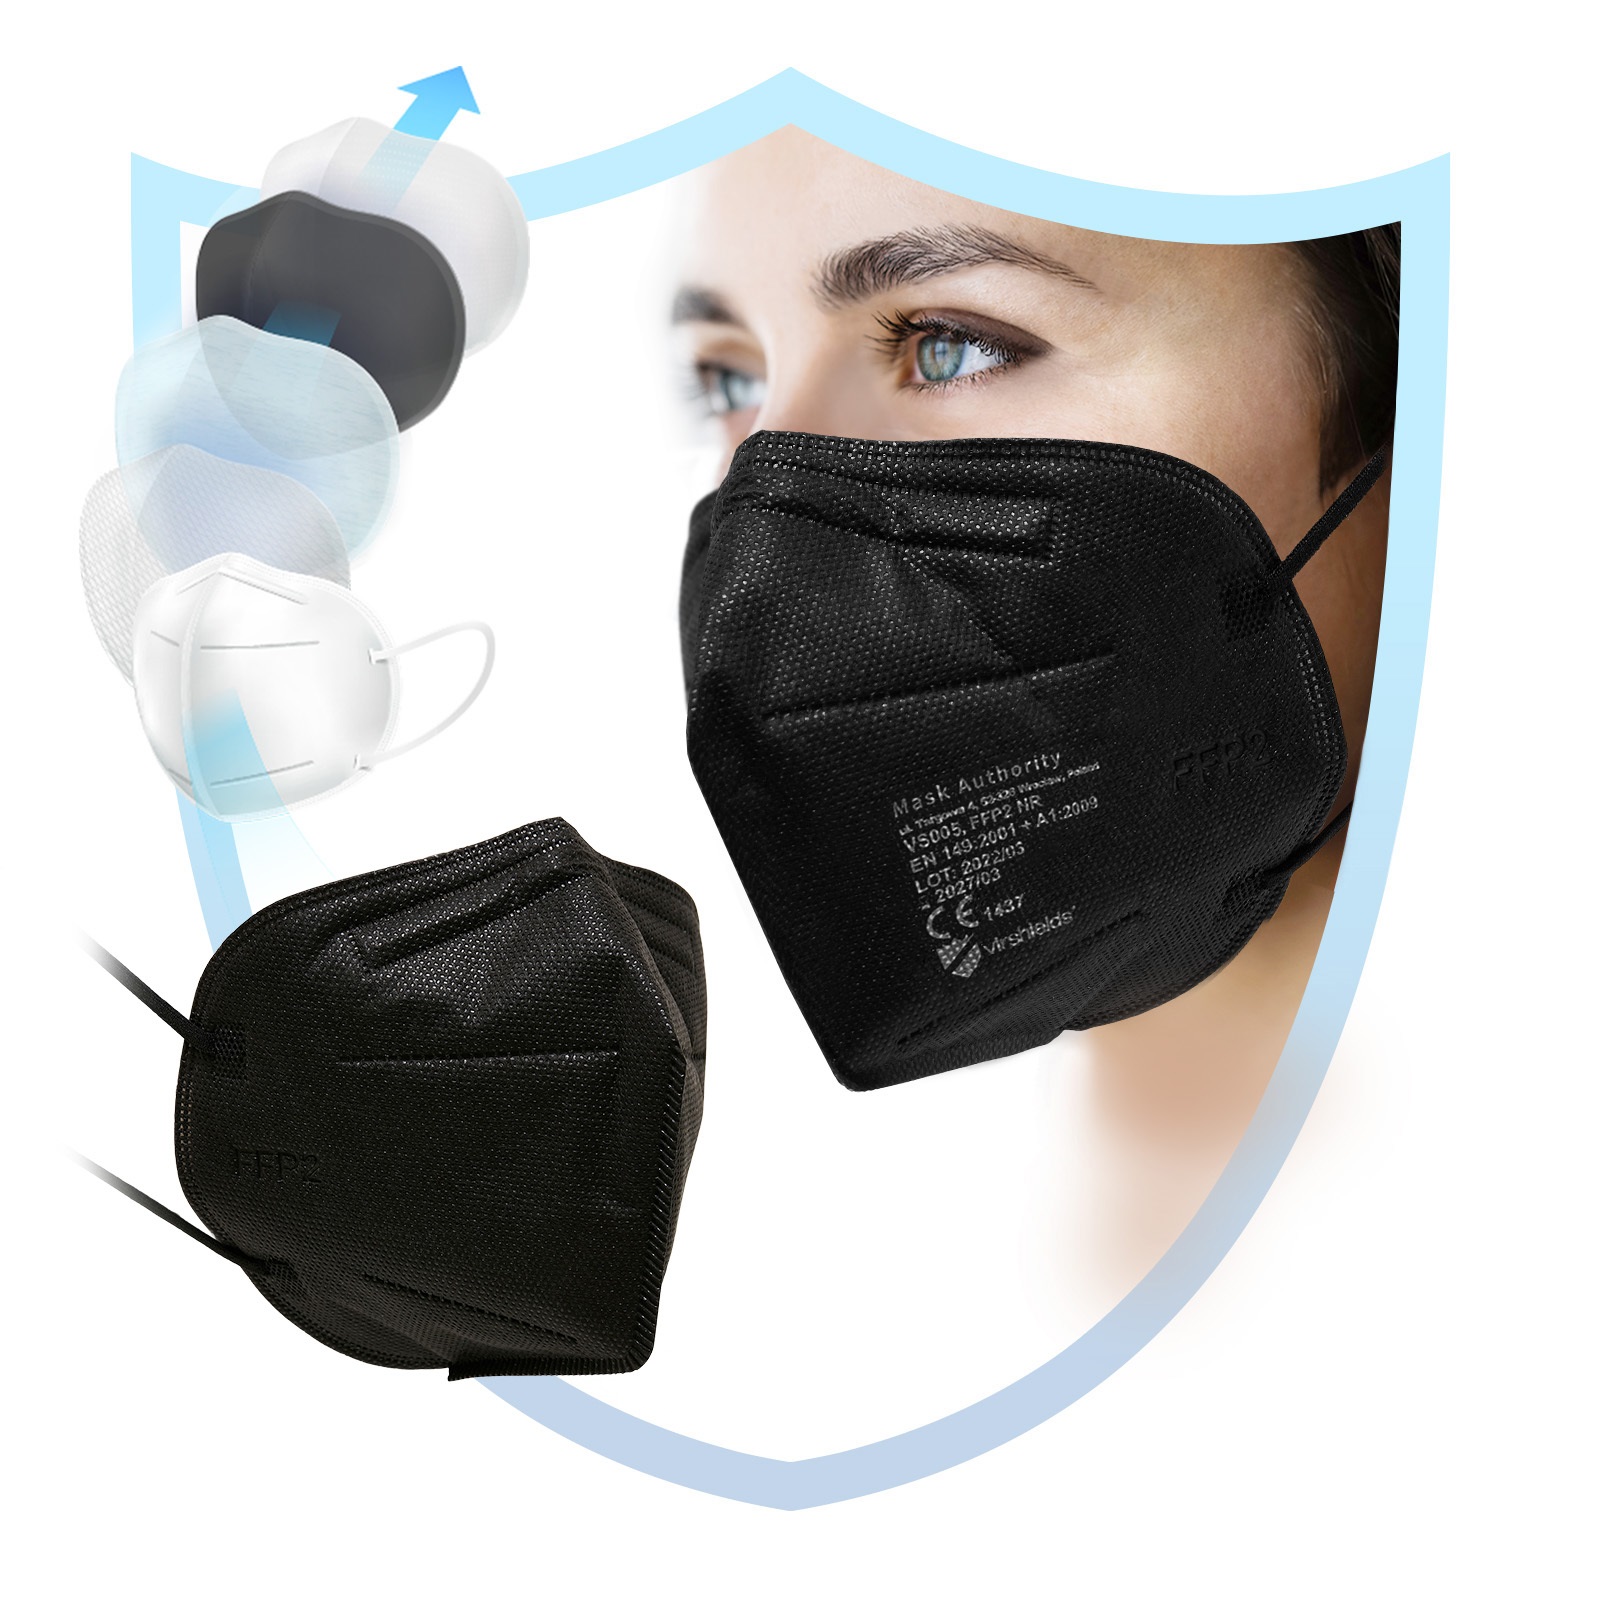 Atemschutzmasken FFP2 ohne Ventil CE1437
Angewandte Norm: WN 149:2001+A1:2009
Unterverpackt in 10 Stück
450 Stück im Karton
16 Kartons/Palette